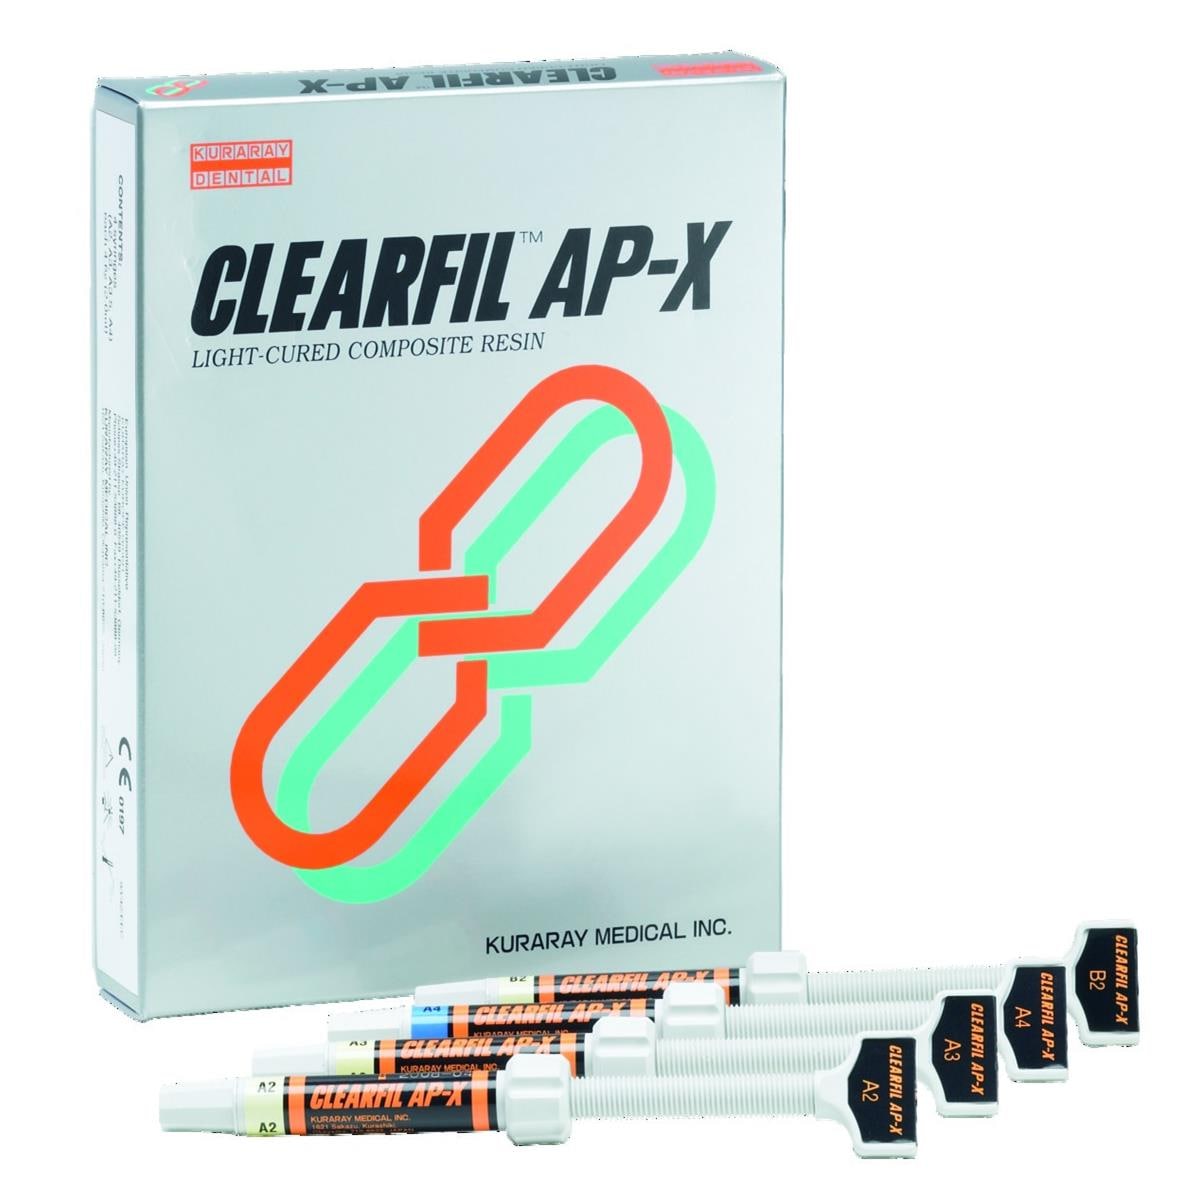 Clearfil AP-X KURARAY - B4 - Seringue de 4,6g